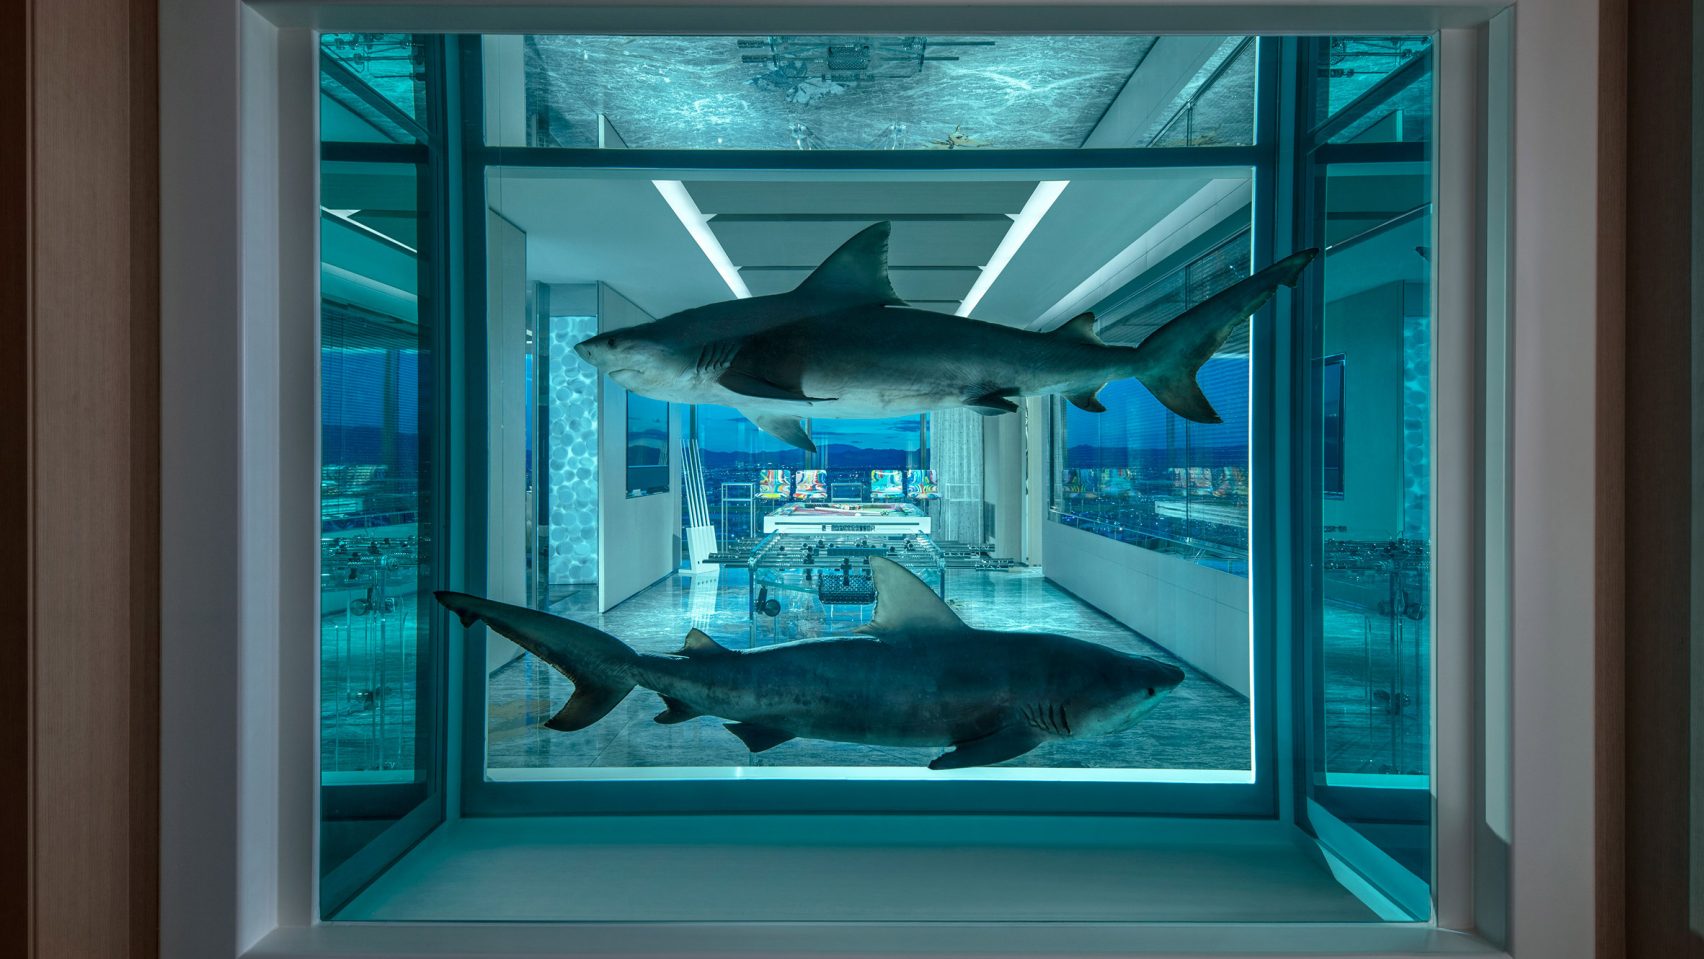 Las Vegasban 55 millió forintot kell fizetned, hogy döglött cápák társaságában alhass 1